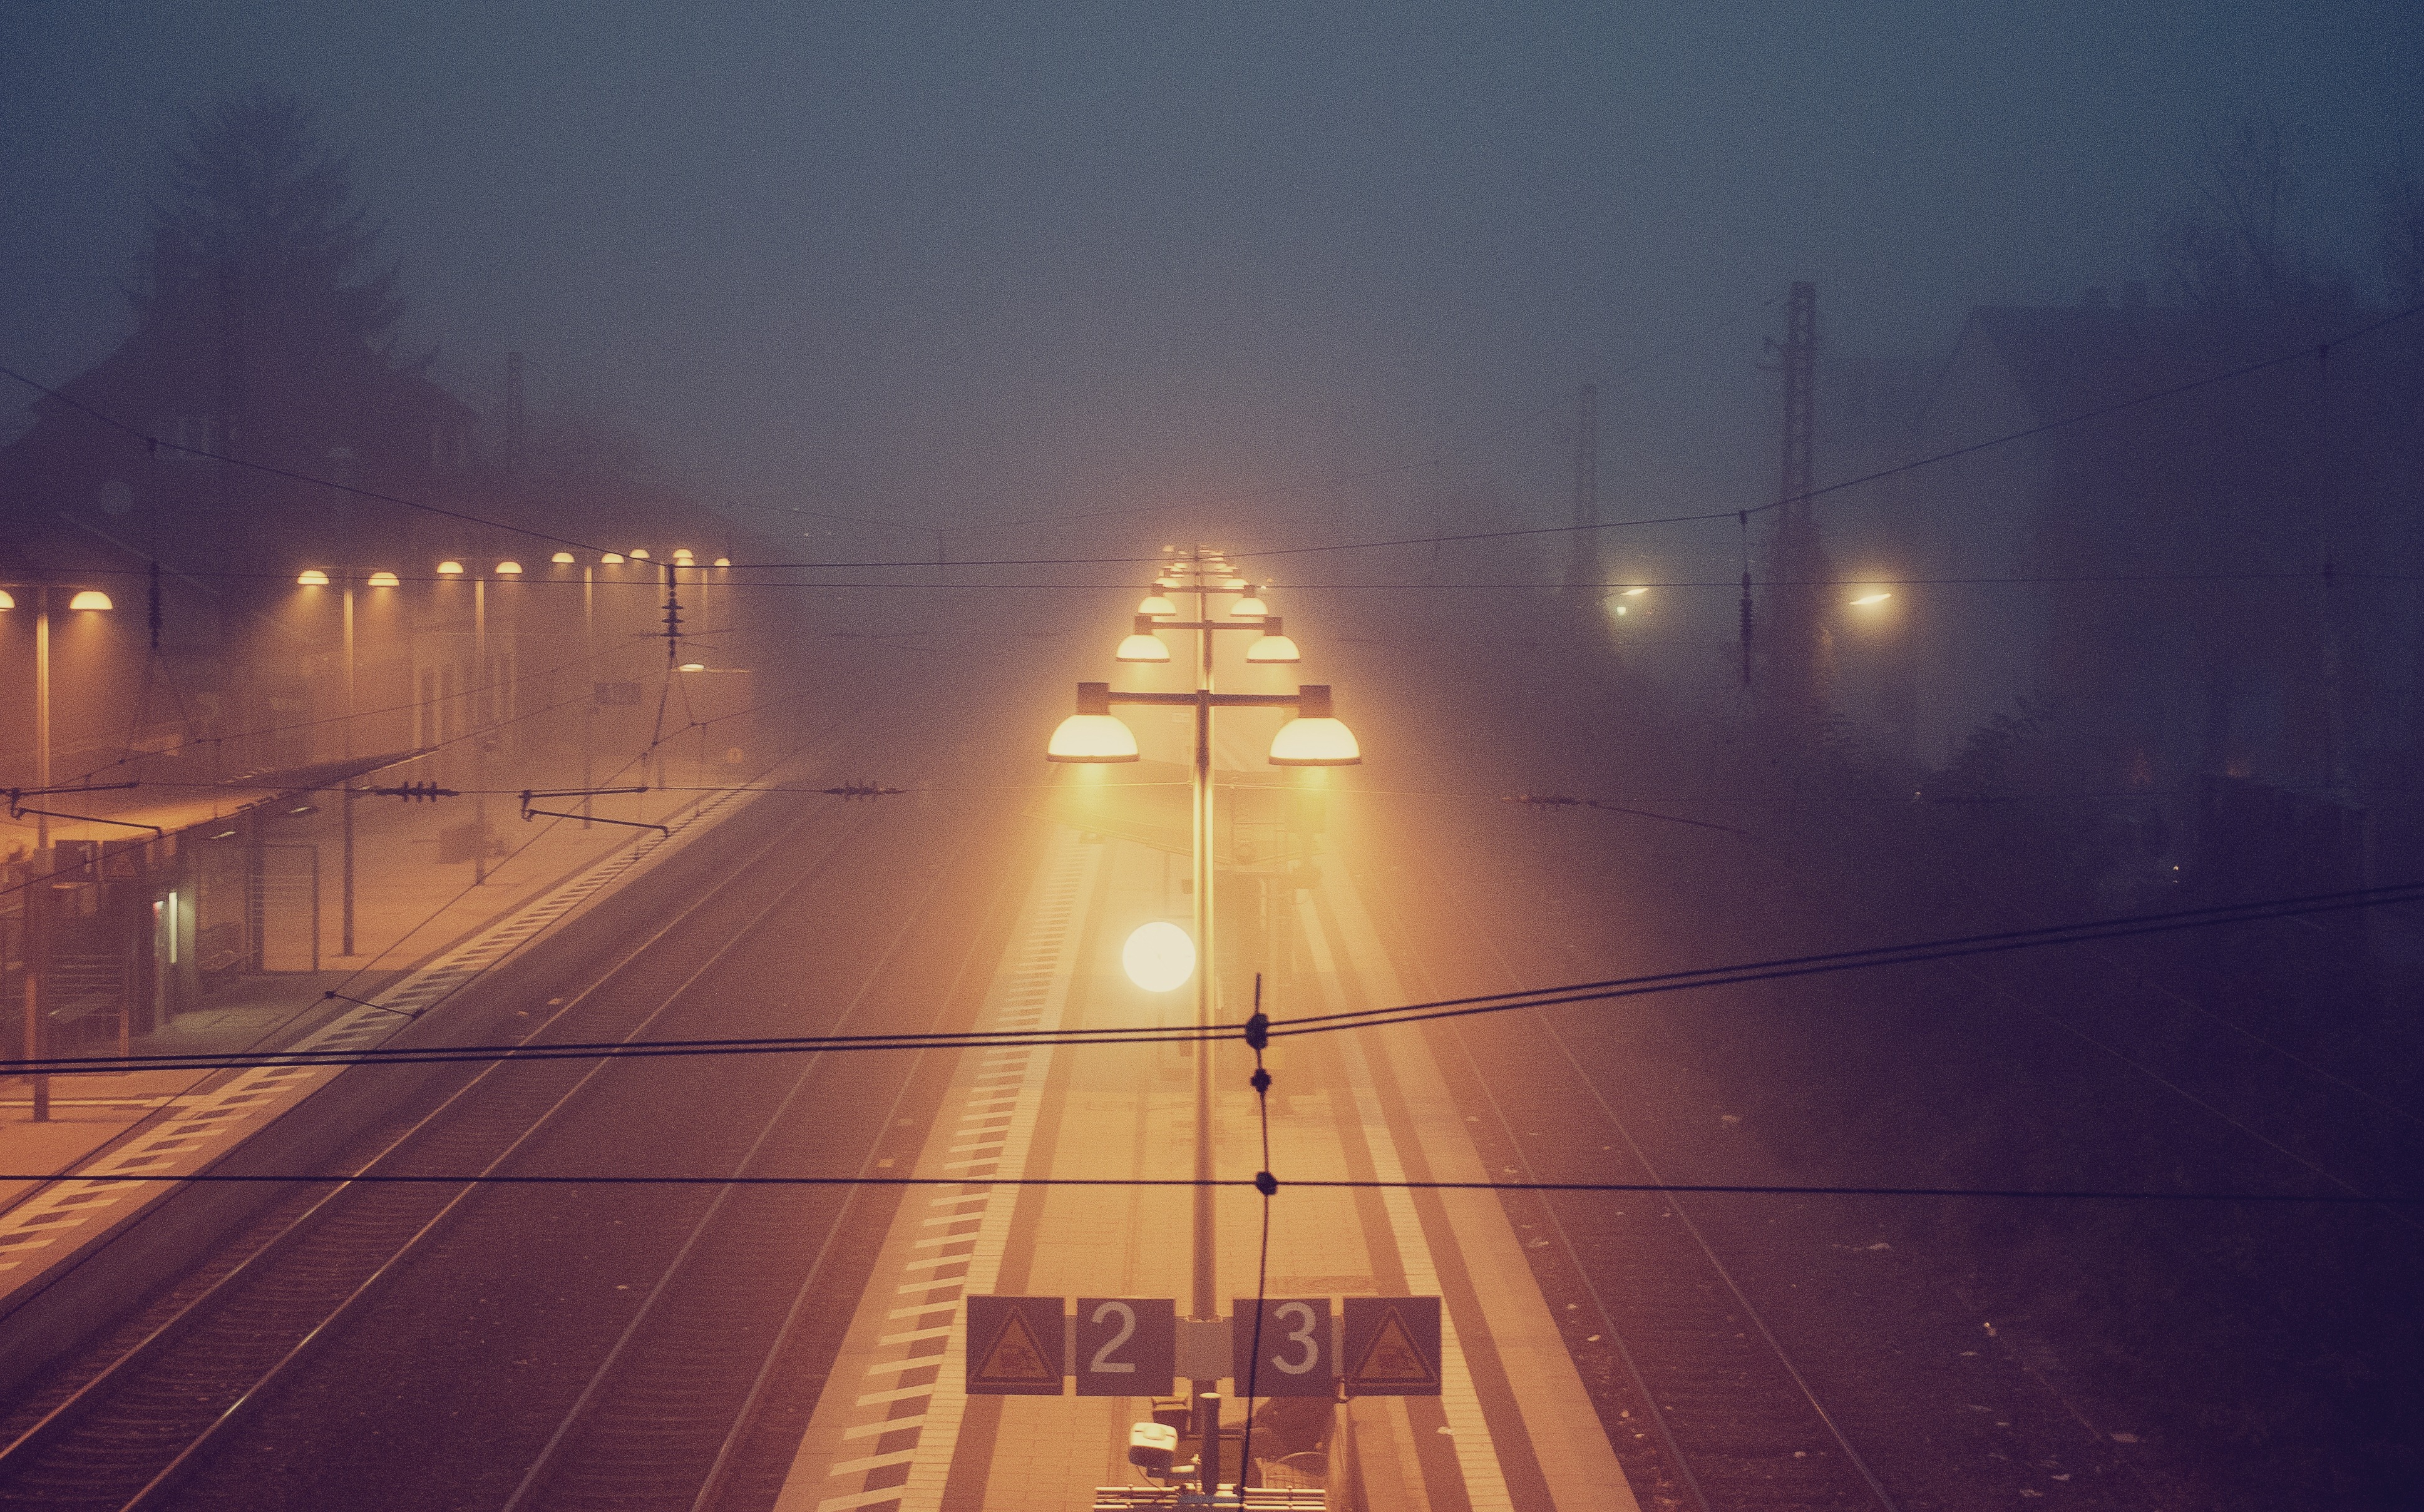 Осветил дорогу сердцем. Освещение станции. Город в тумане. Освещение ЖД станций. Станция туман.